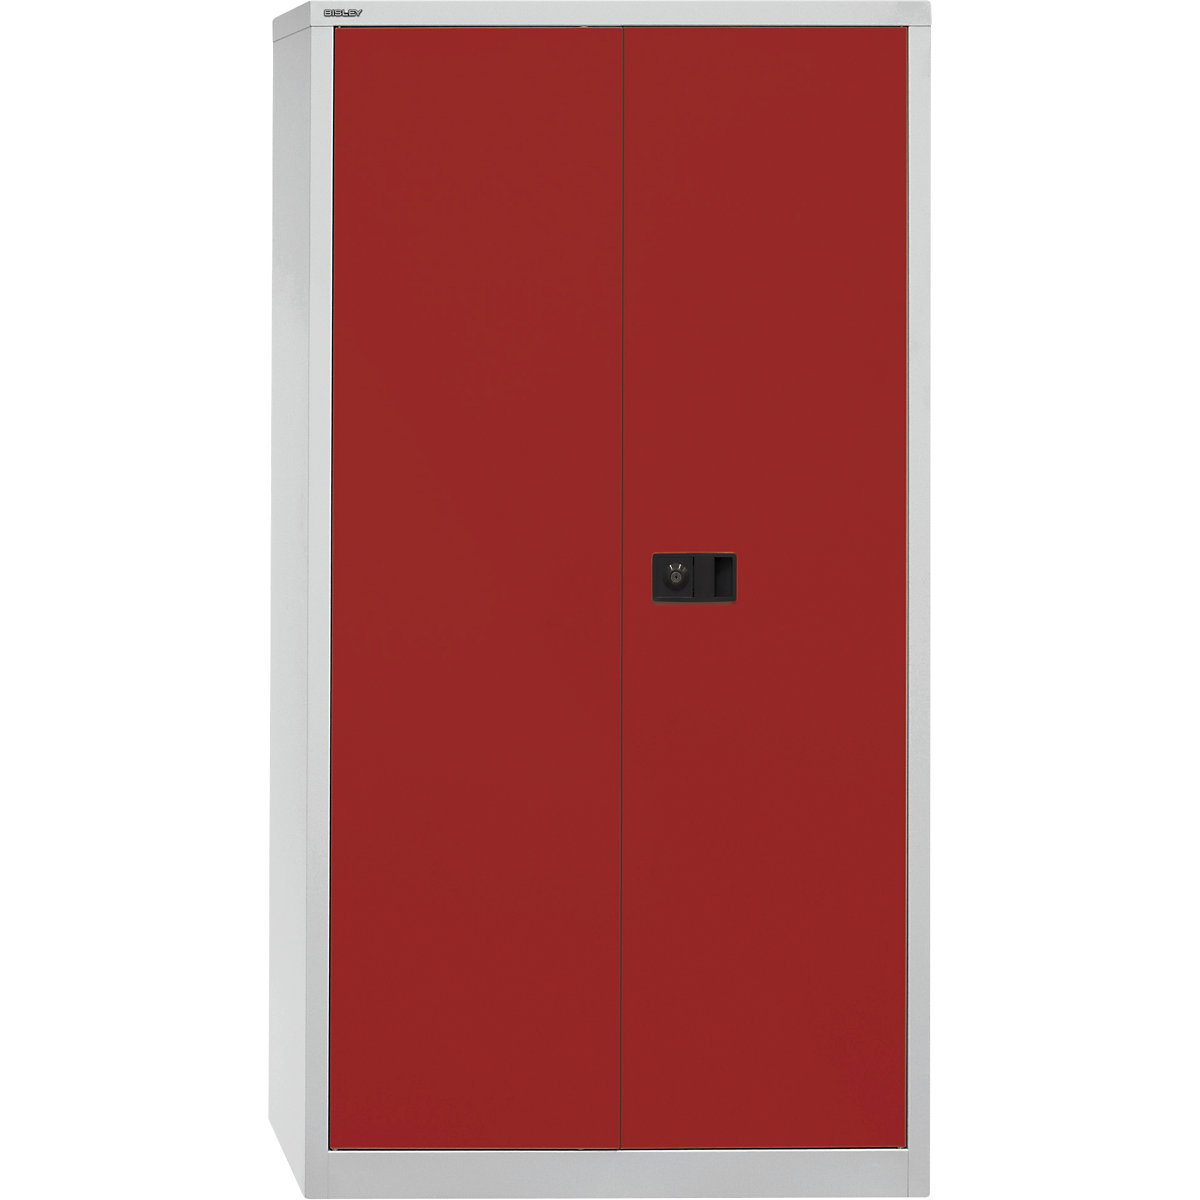 Omara s krilnimi vrati UNIVERSAL – BISLEY, VxŠxG 1806 x 914 x 400 mm, 3 police, 4 nivoji, svetlo siva / kardinalsko rdeča-7